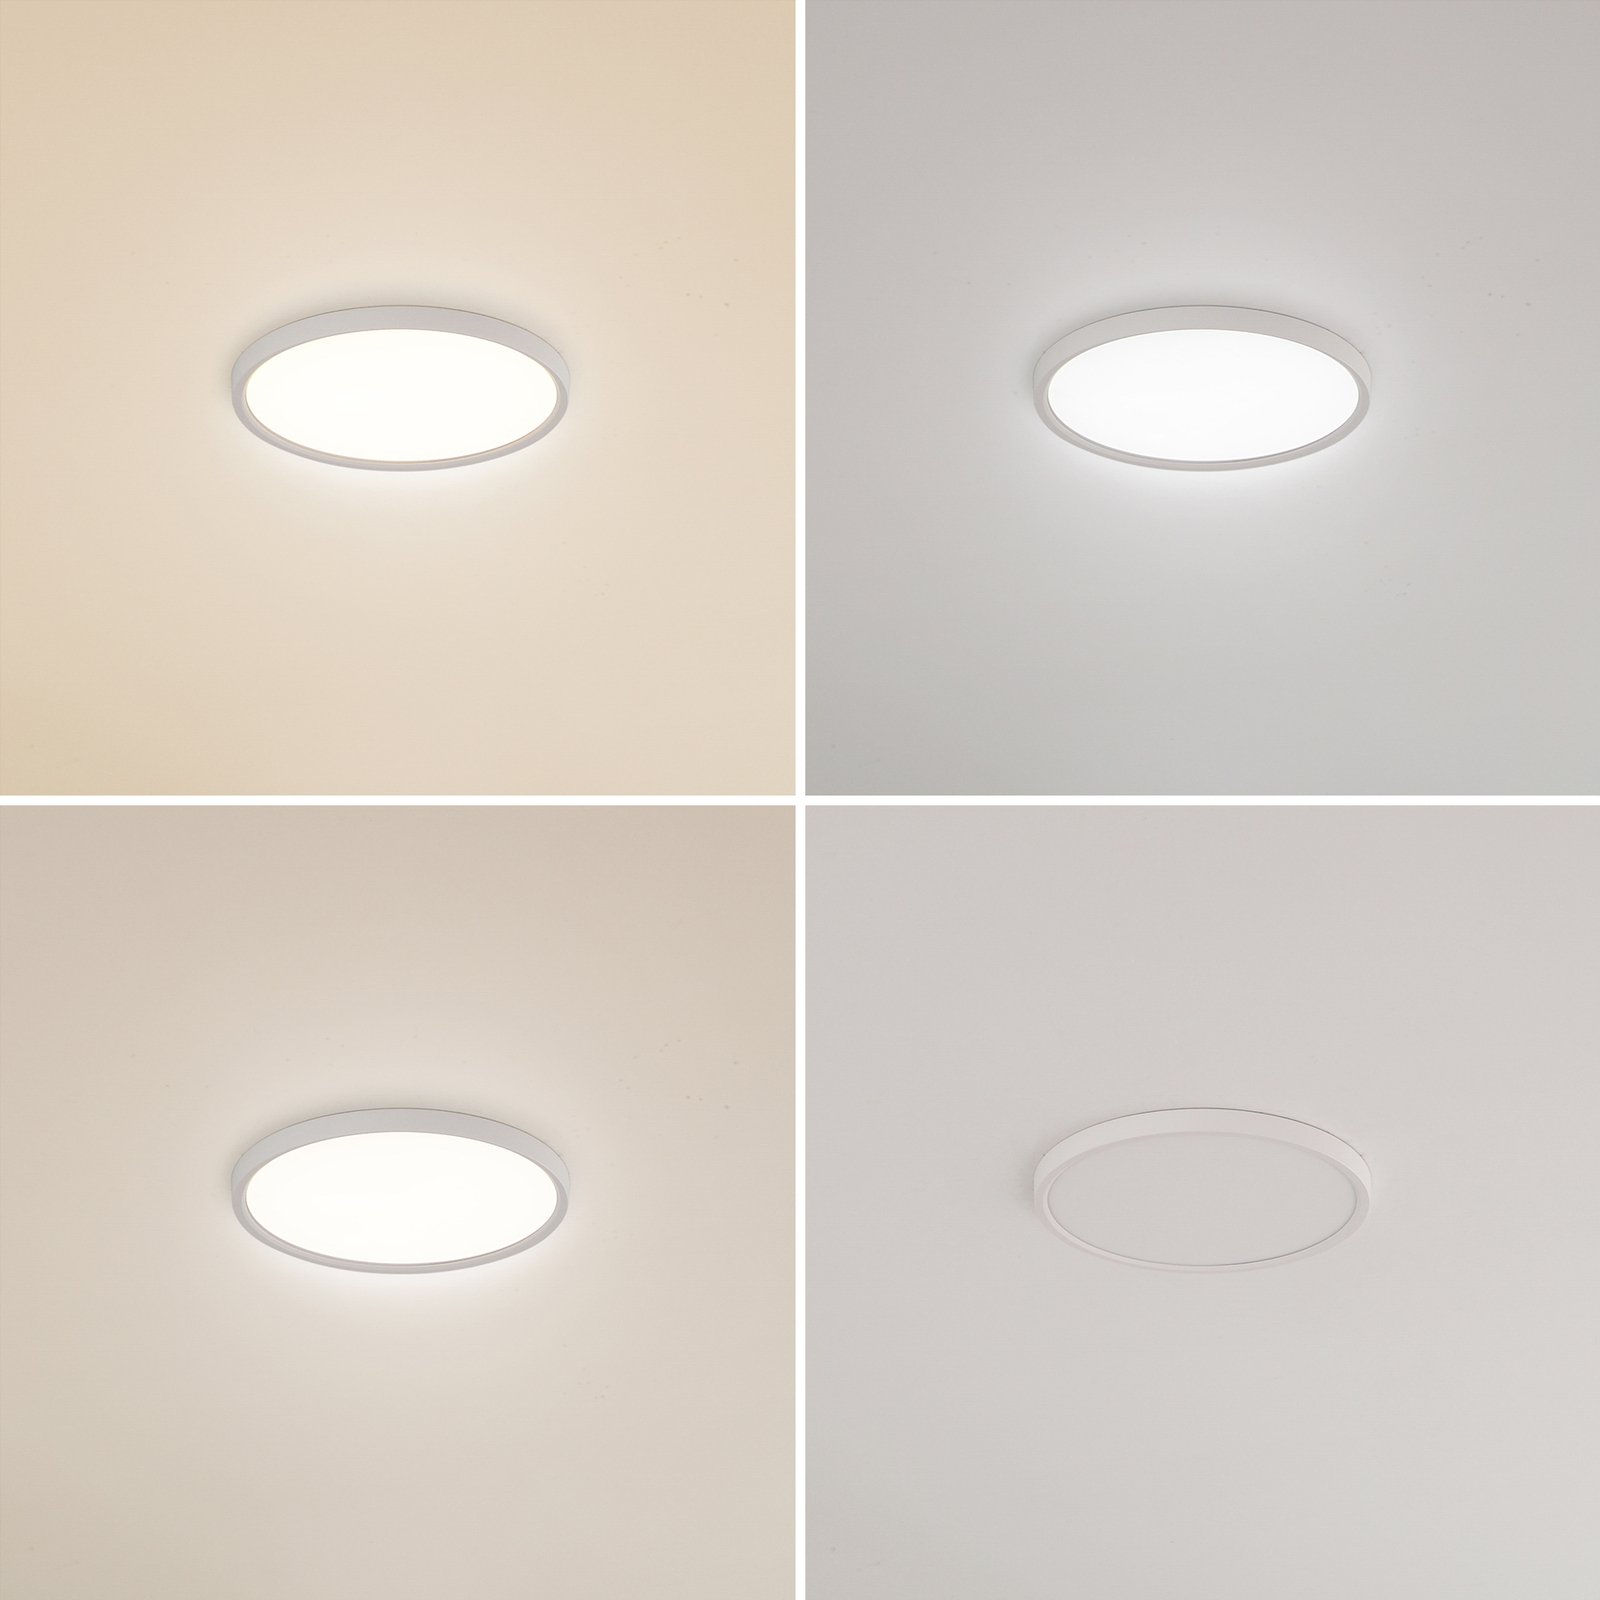 Lindby LED φωτιστικό οροφής Deika, 40 cm, λευκό, πλαστικό, CCT